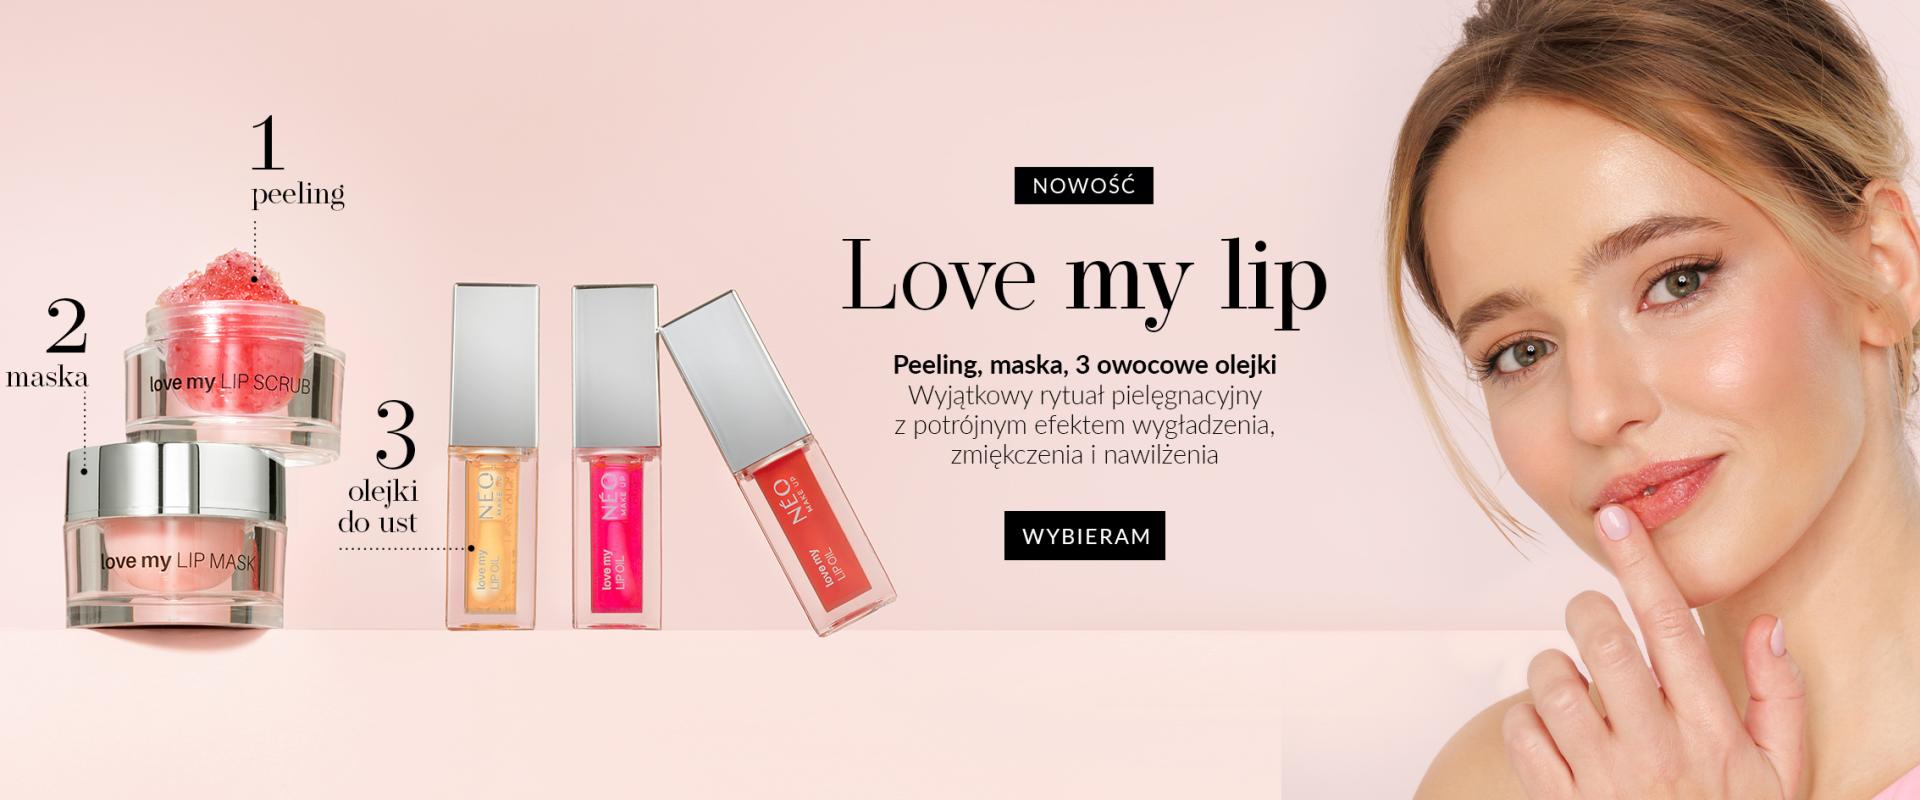 Usta zaopiekowane kosmetykami z linii Love My Lip od Neo Make Up